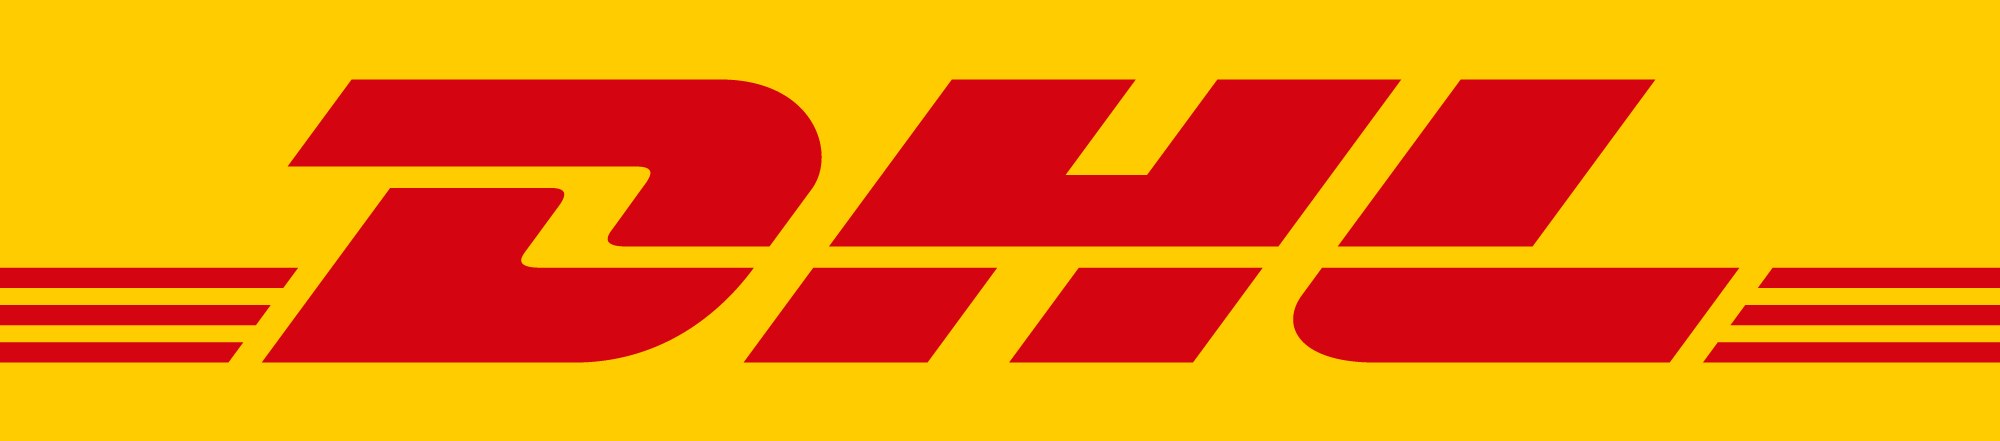 DHL Hub Leipzig GmbH Logo